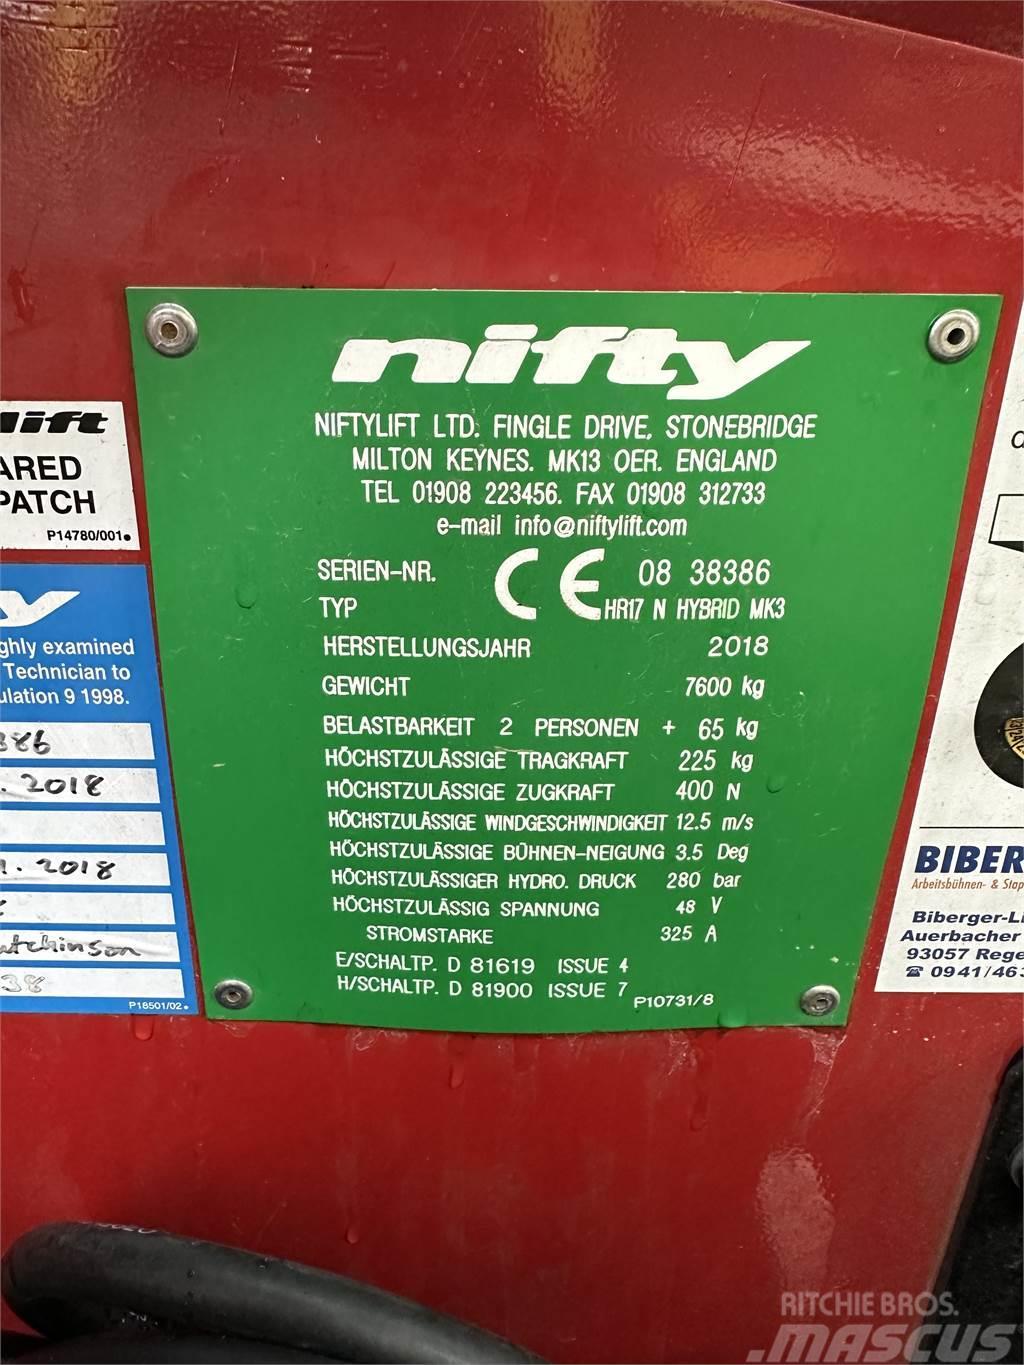 Niftylift HR 17 N HYBRID MK3 Podnośniki przegubowe